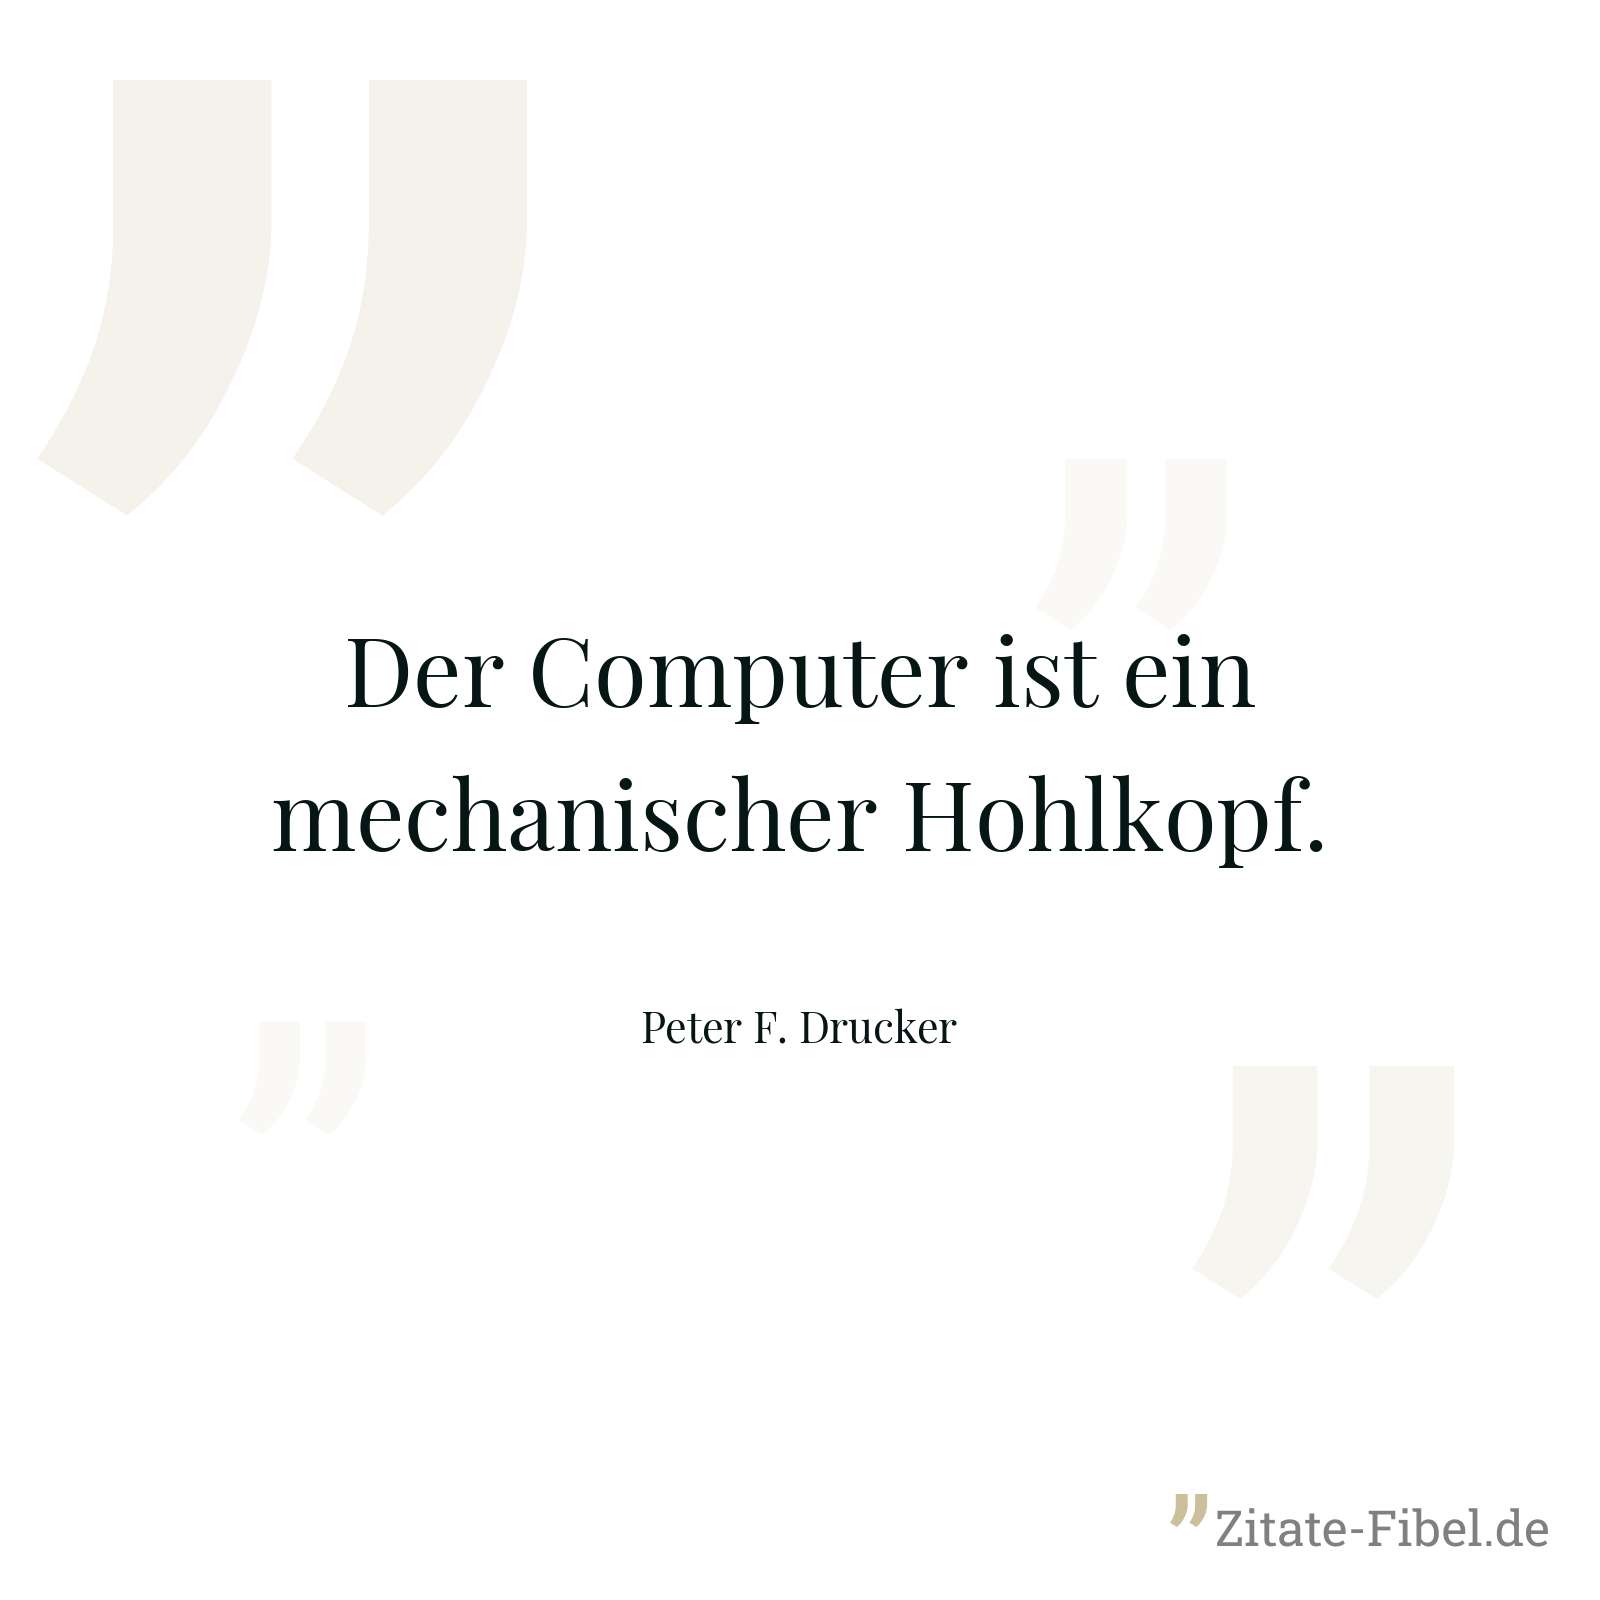 Der Computer ist ein mechanischer Hohlkopf. - Peter F. Drucker